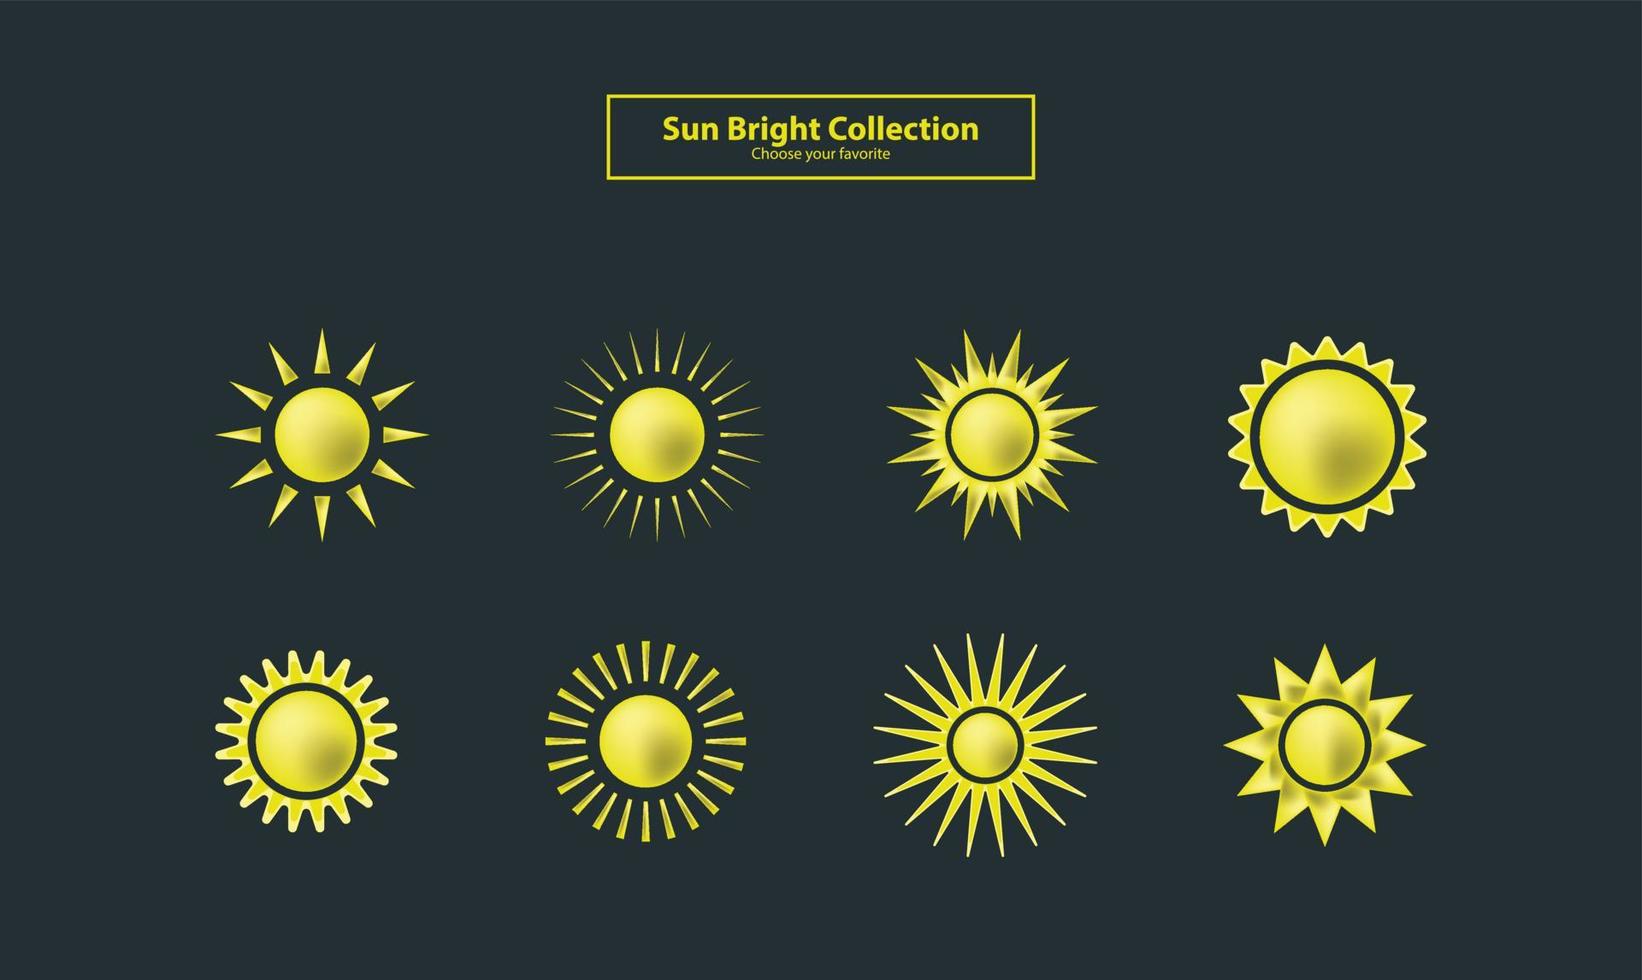 logotyp ikon symbol solen guld rymdelement solljus tecknad samling sommar vektor väder set shinny